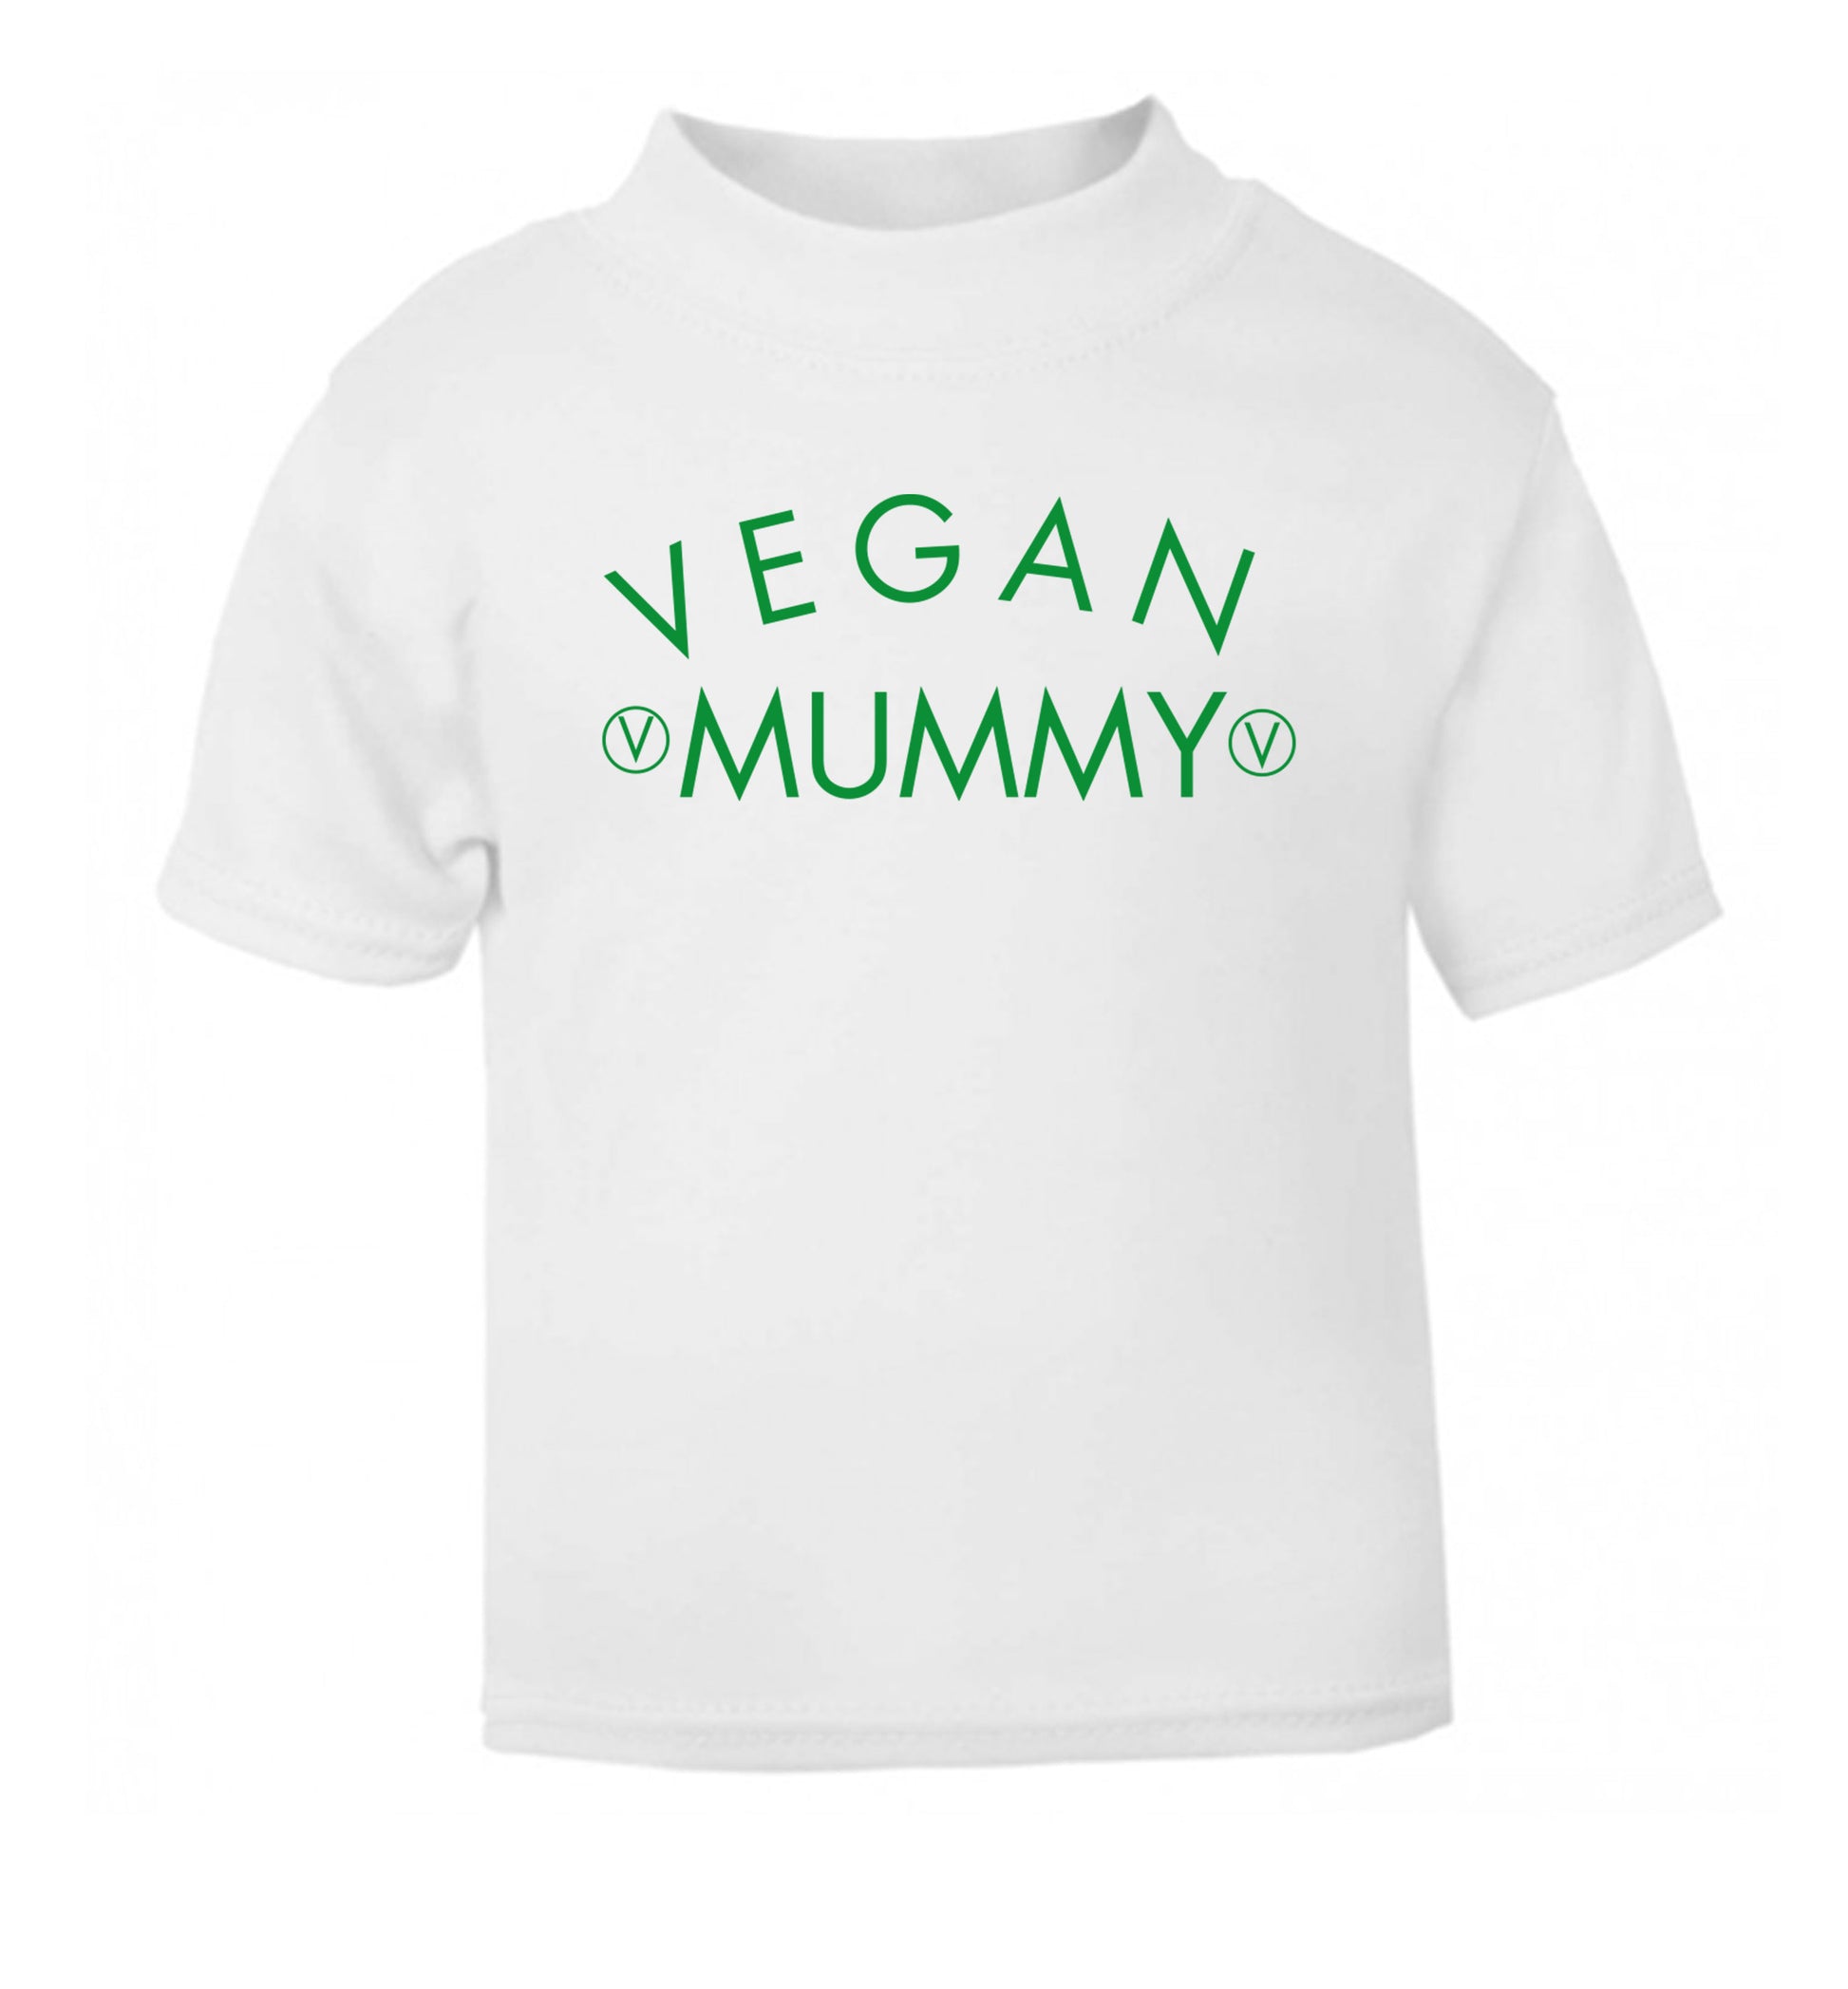 Vegan mummy white Baby Toddler Tshirt 2 Years